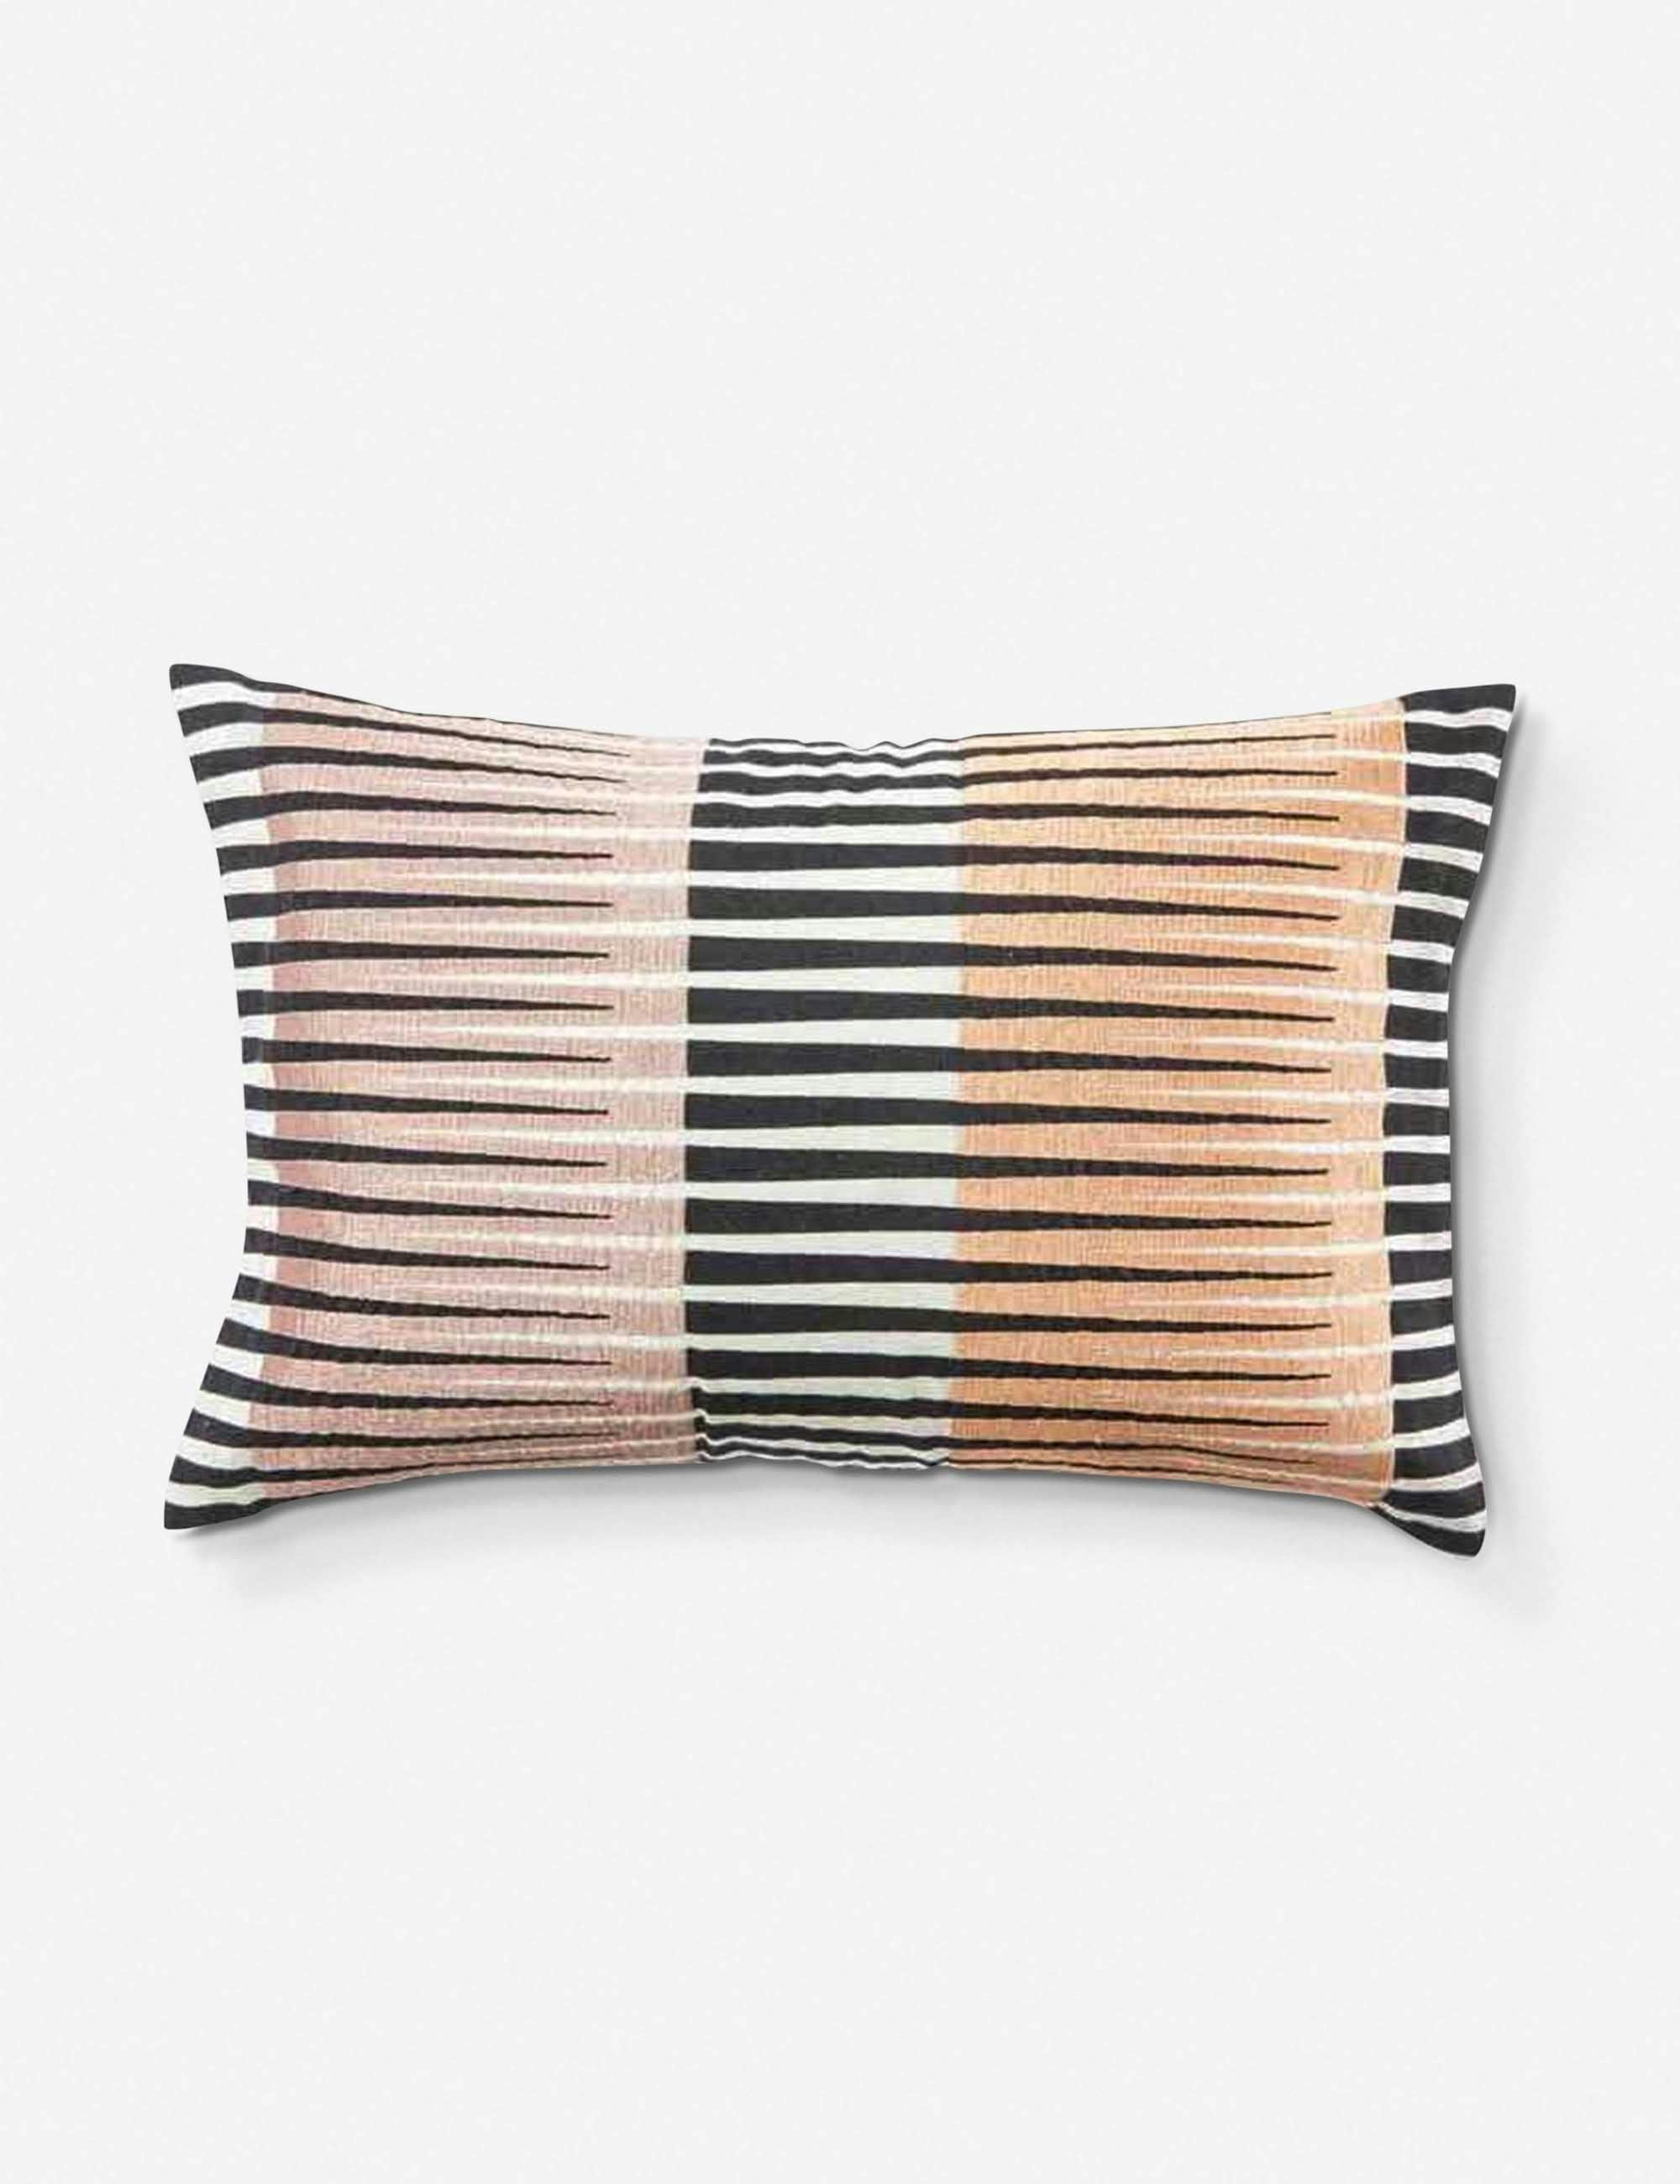 Malabar Lumbar Polyester Pillow by Nikki Chu